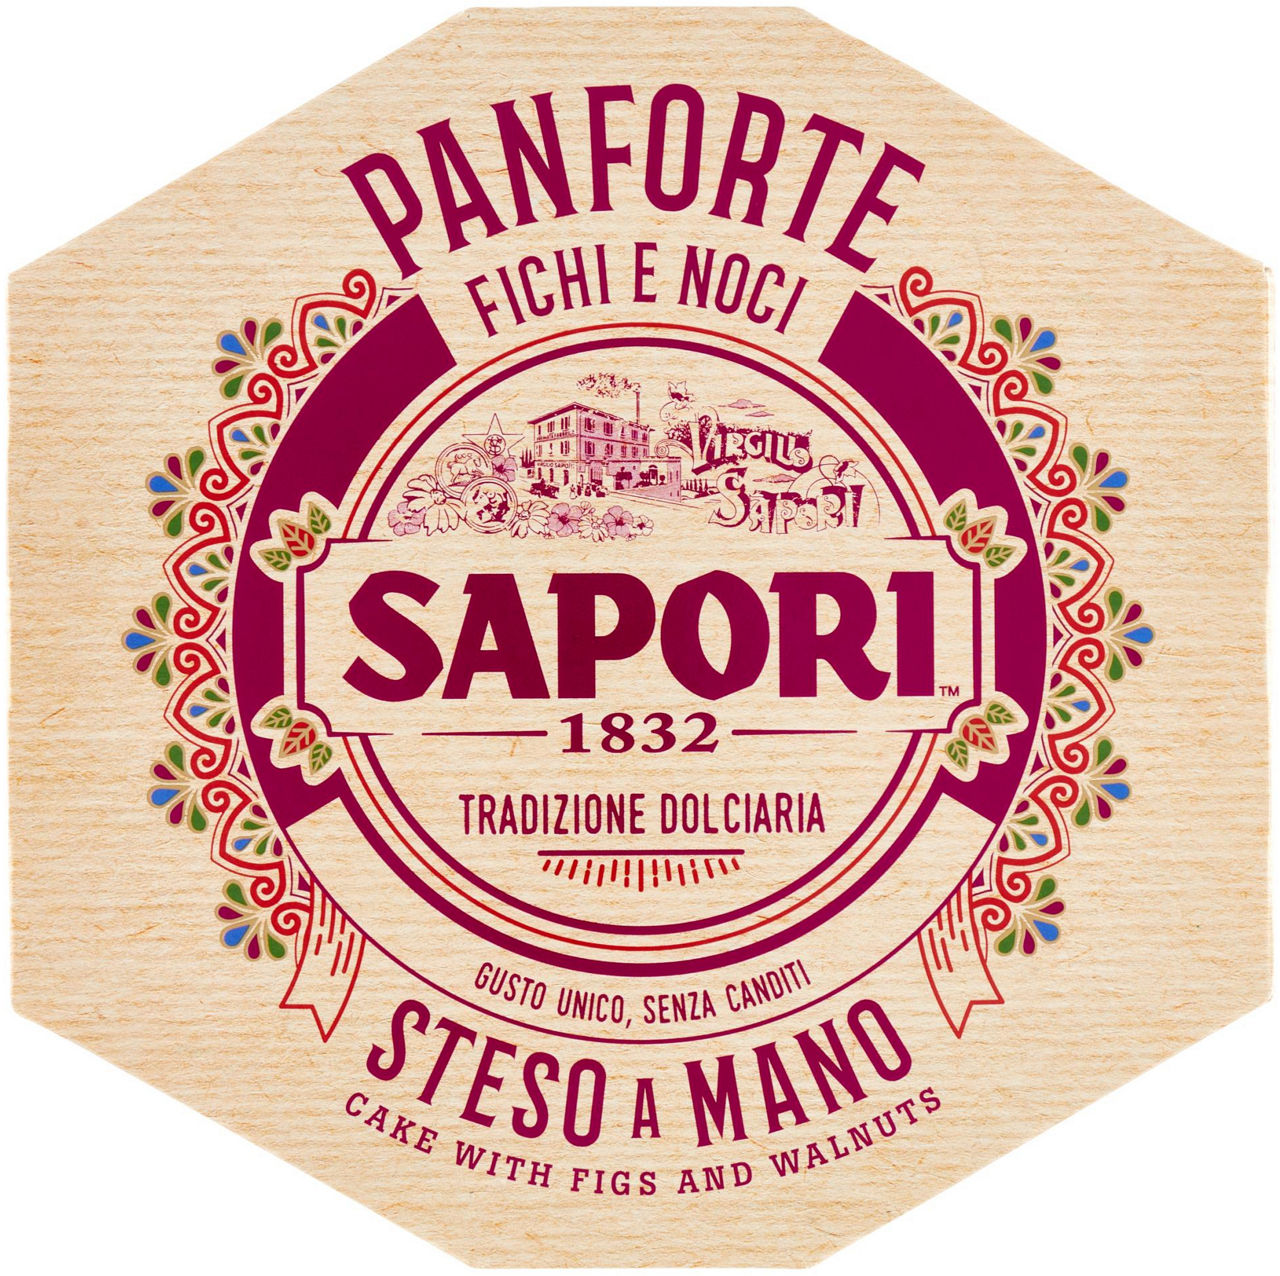 SAPORI PANFORTE FICHI E NOCI 280 - 0